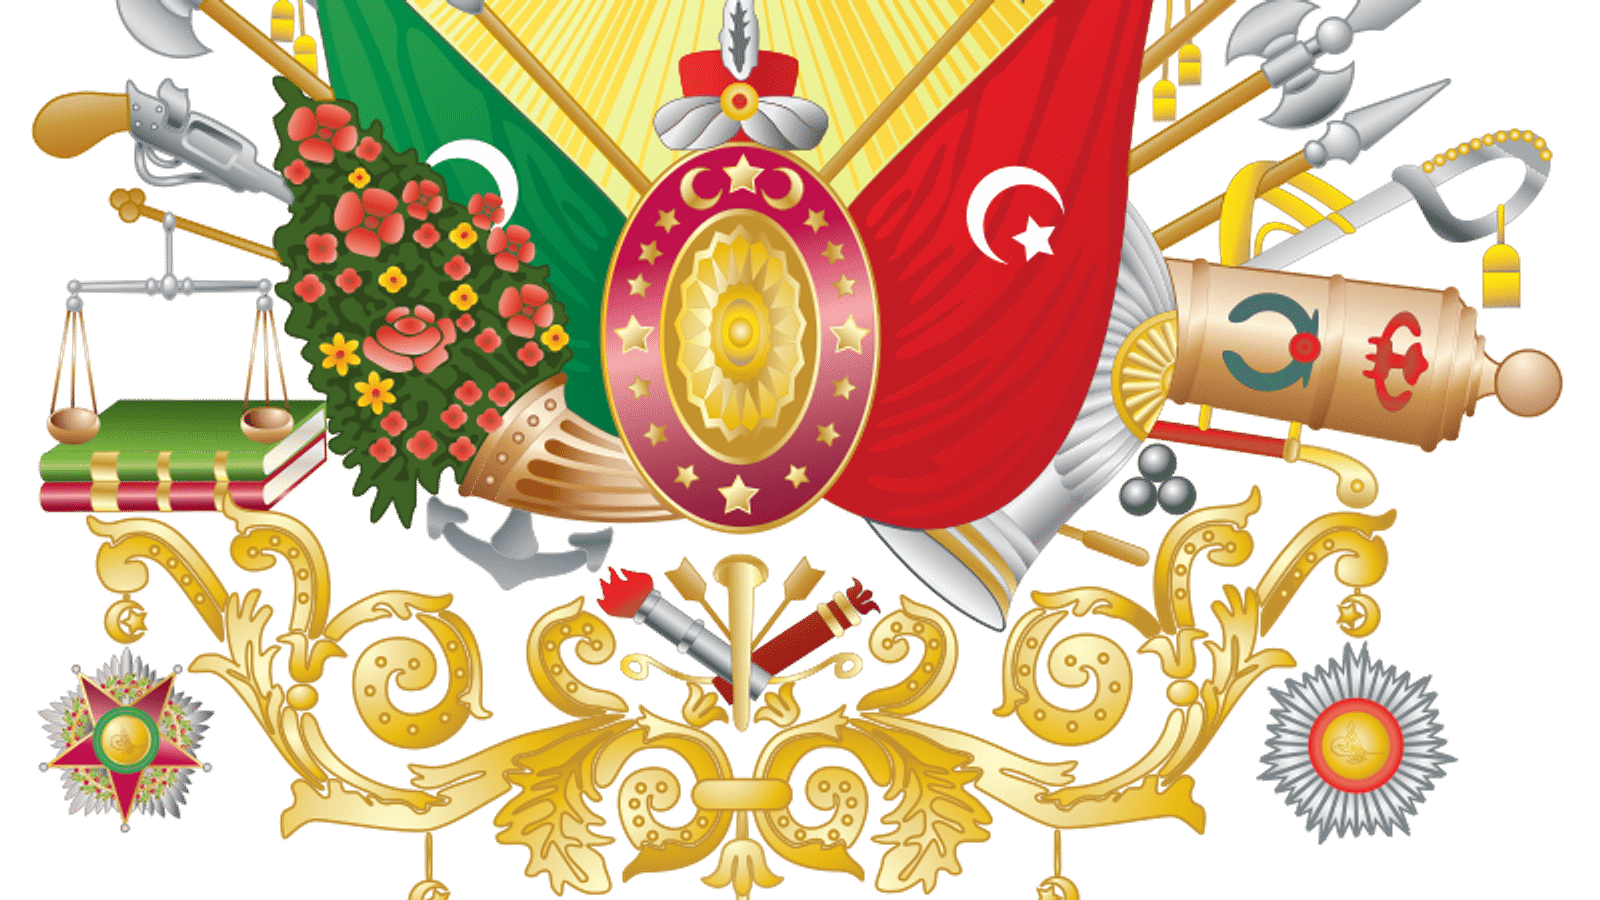 Ottoman Empire - World History Encyclopedia